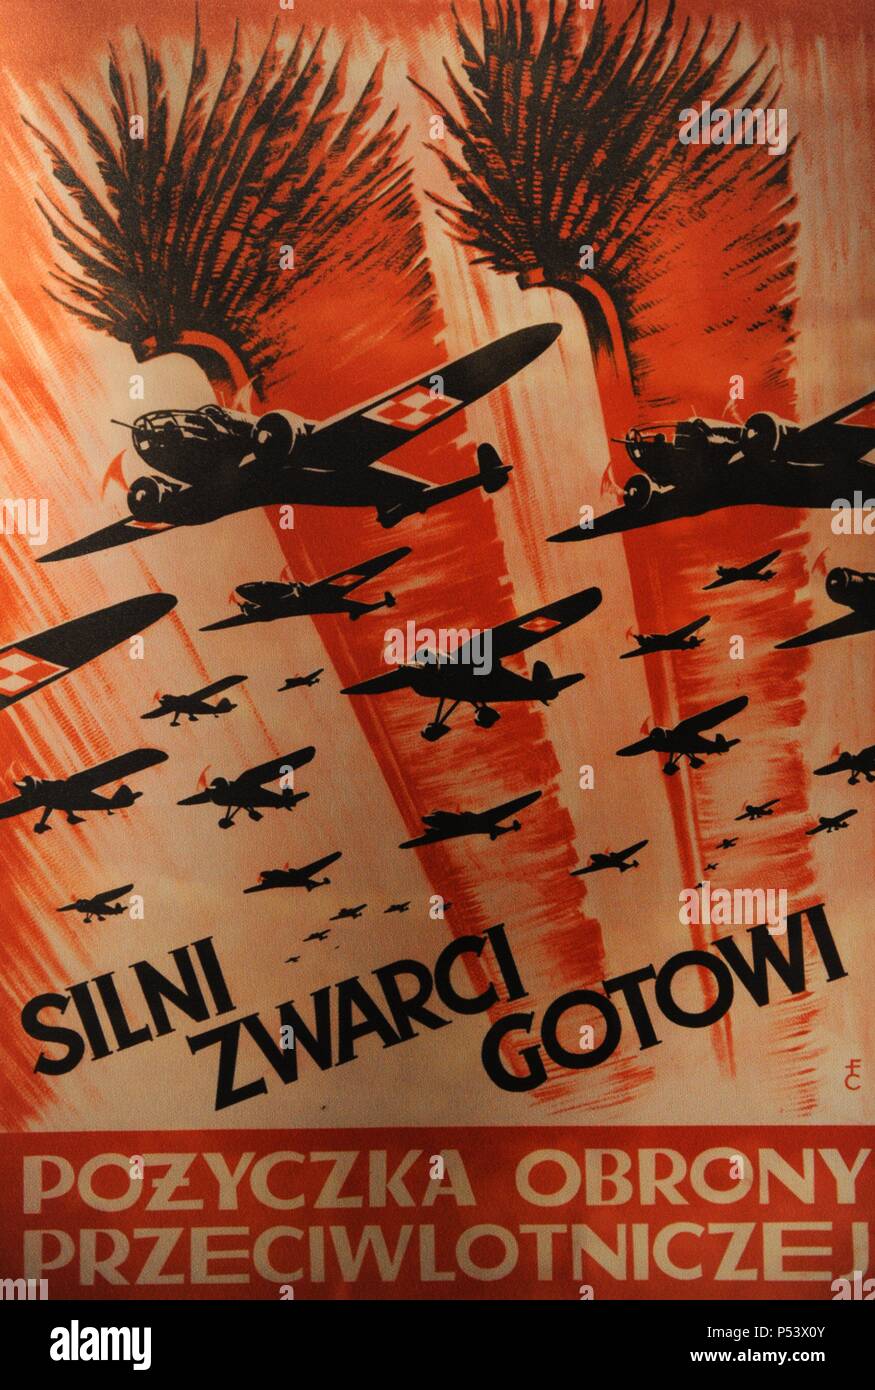 La Seconde Guerre mondiale. Affiche de propagande de l'Armée de l'Air polonaise, 1939. Oskar Schlinder Museum. Cracovie. La Pologne. Banque D'Images